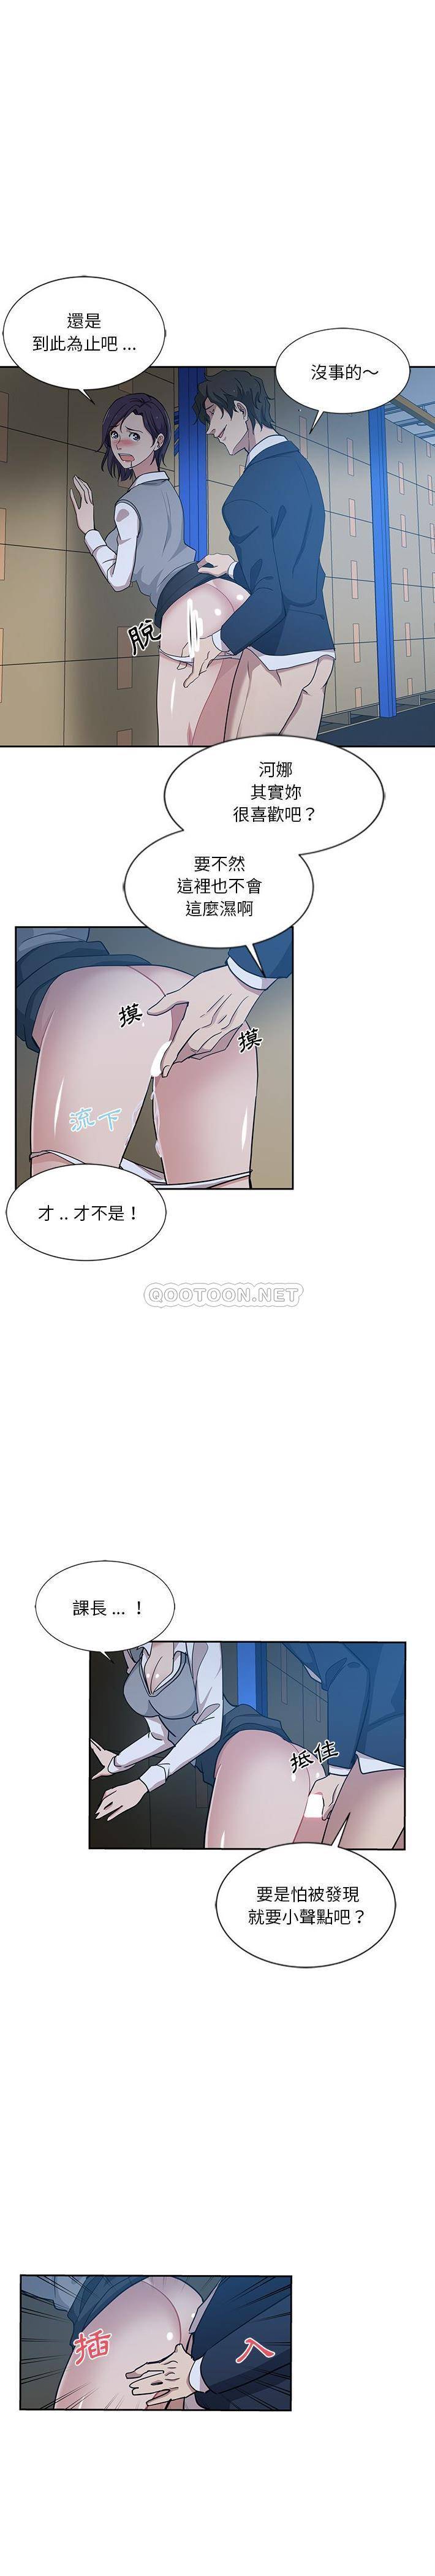 韩国污漫画 危險純友誼 第7话 11